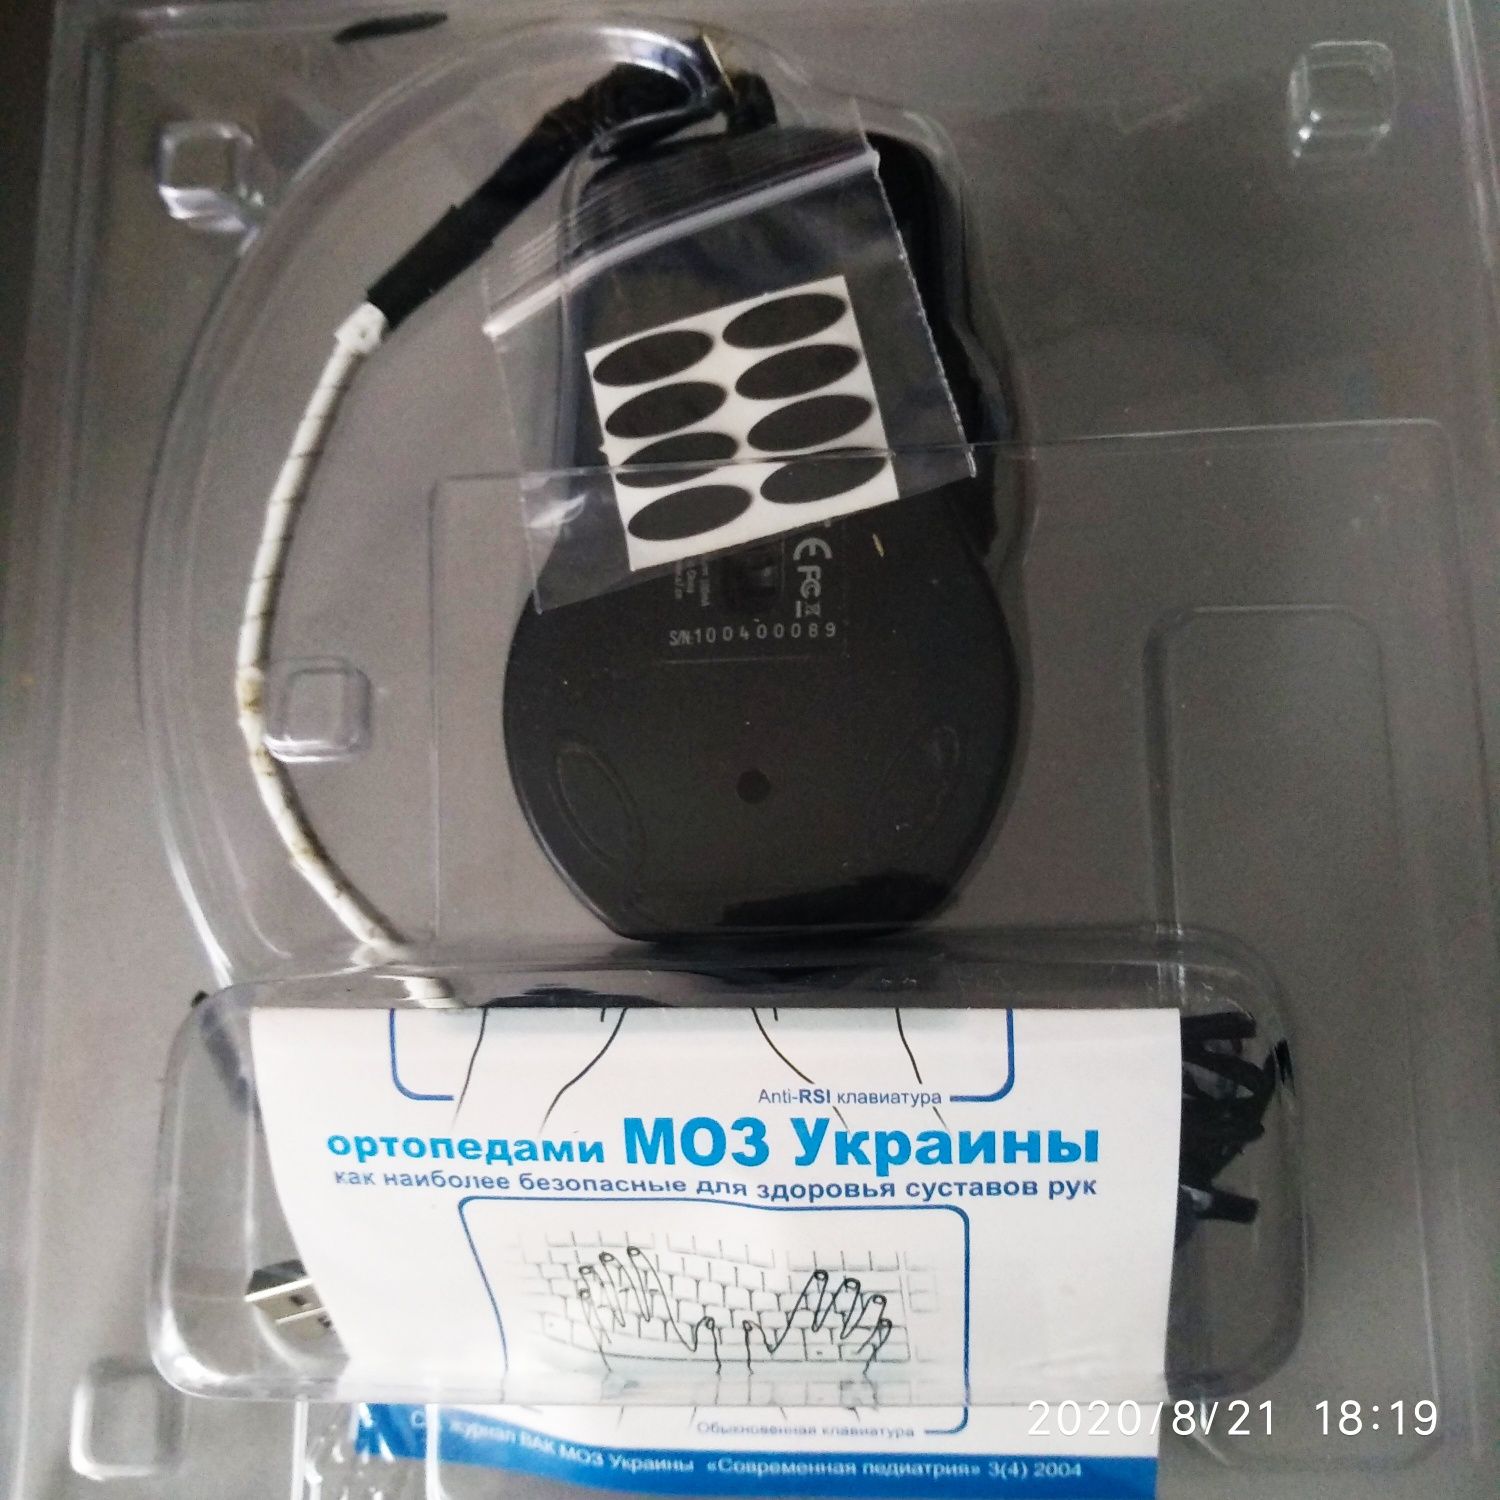 Продам оптическую игровую мышь фирмы "OSCAR X-755BK".